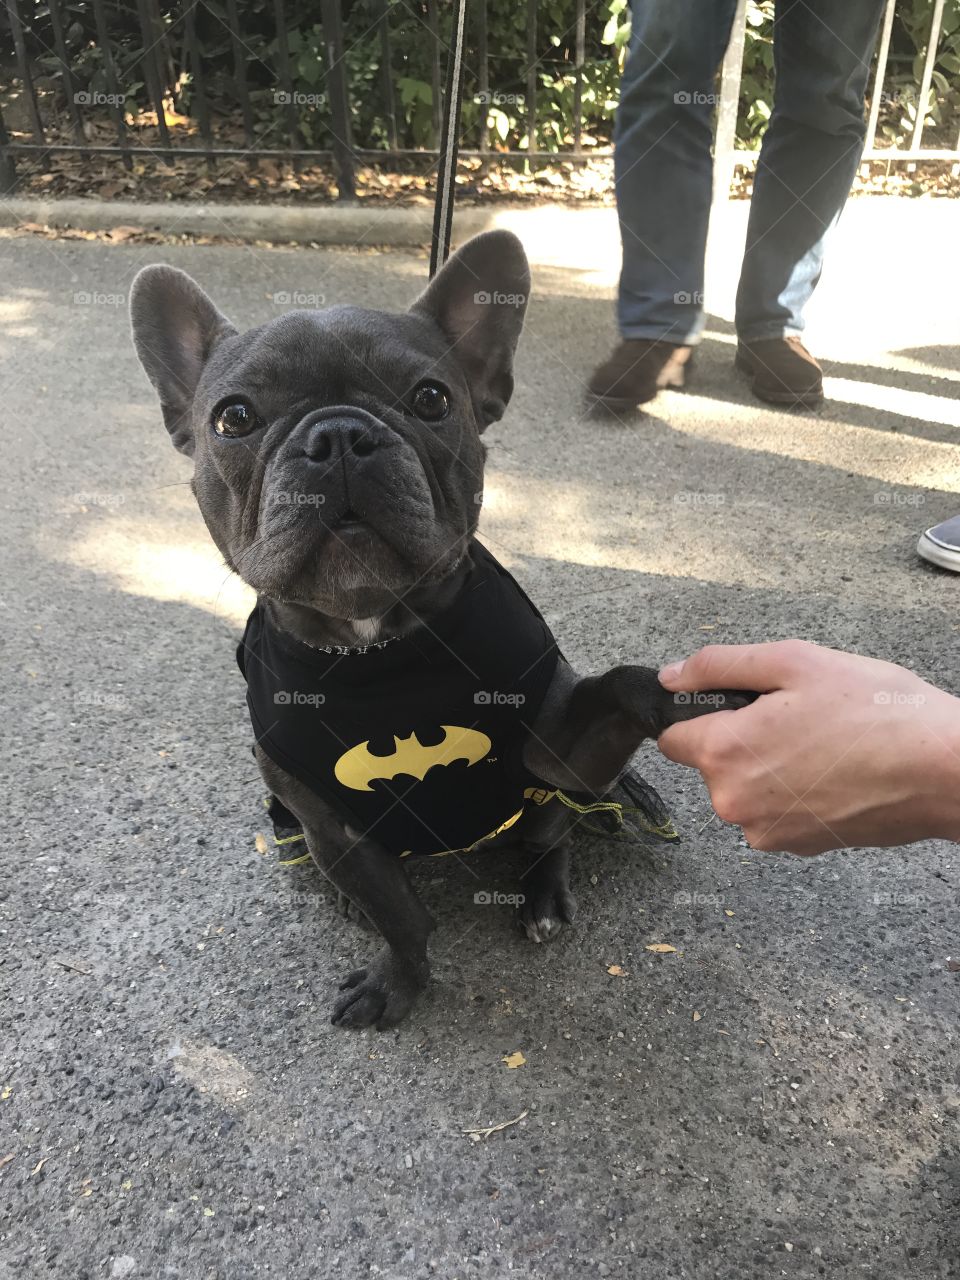 Batman dog